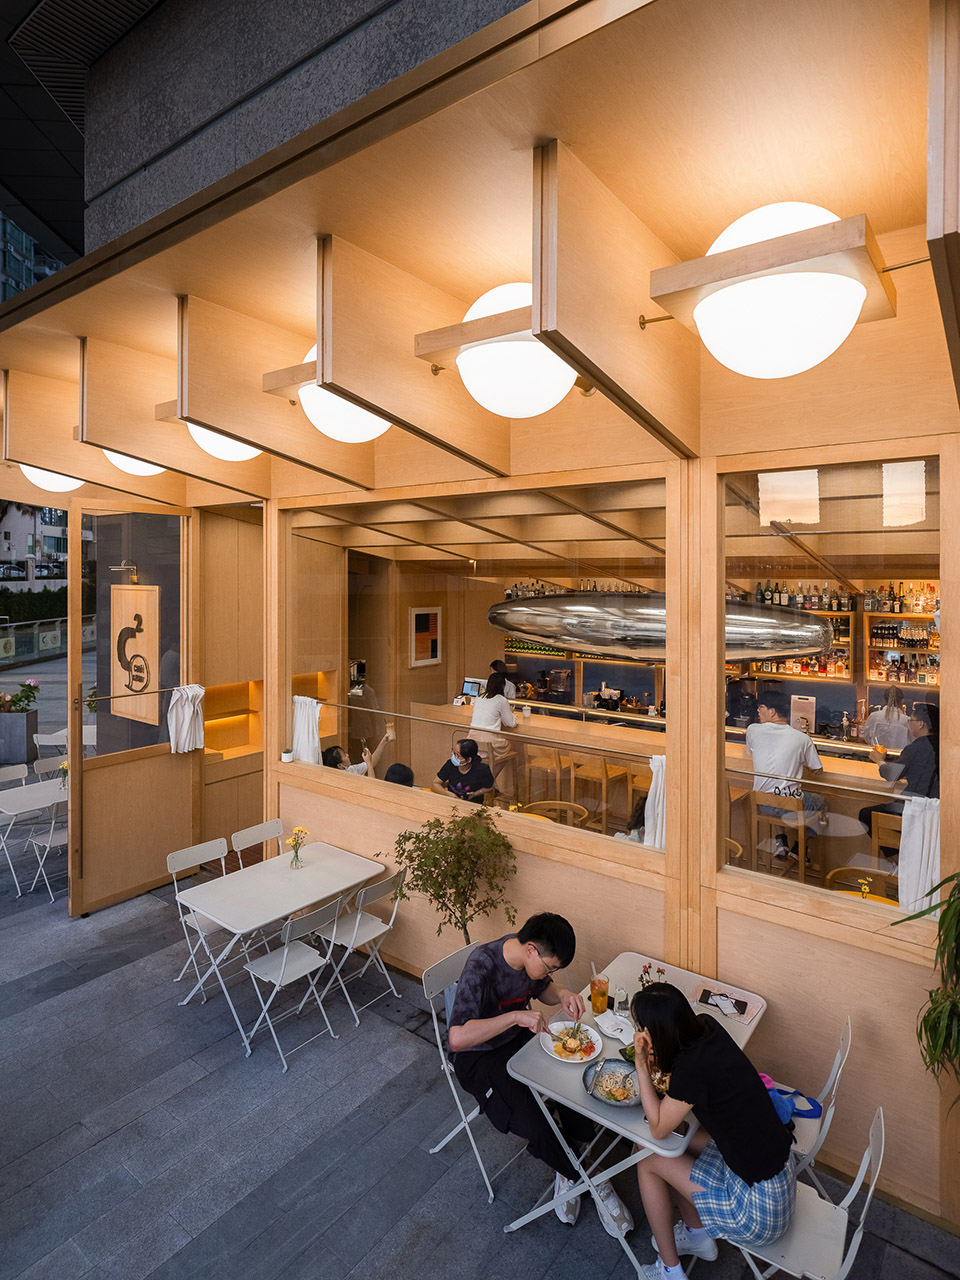 浮廊C2 Cafe &  Bar咖啡厅，深圳/专门为年轻人打造的“空中楼阁”-54